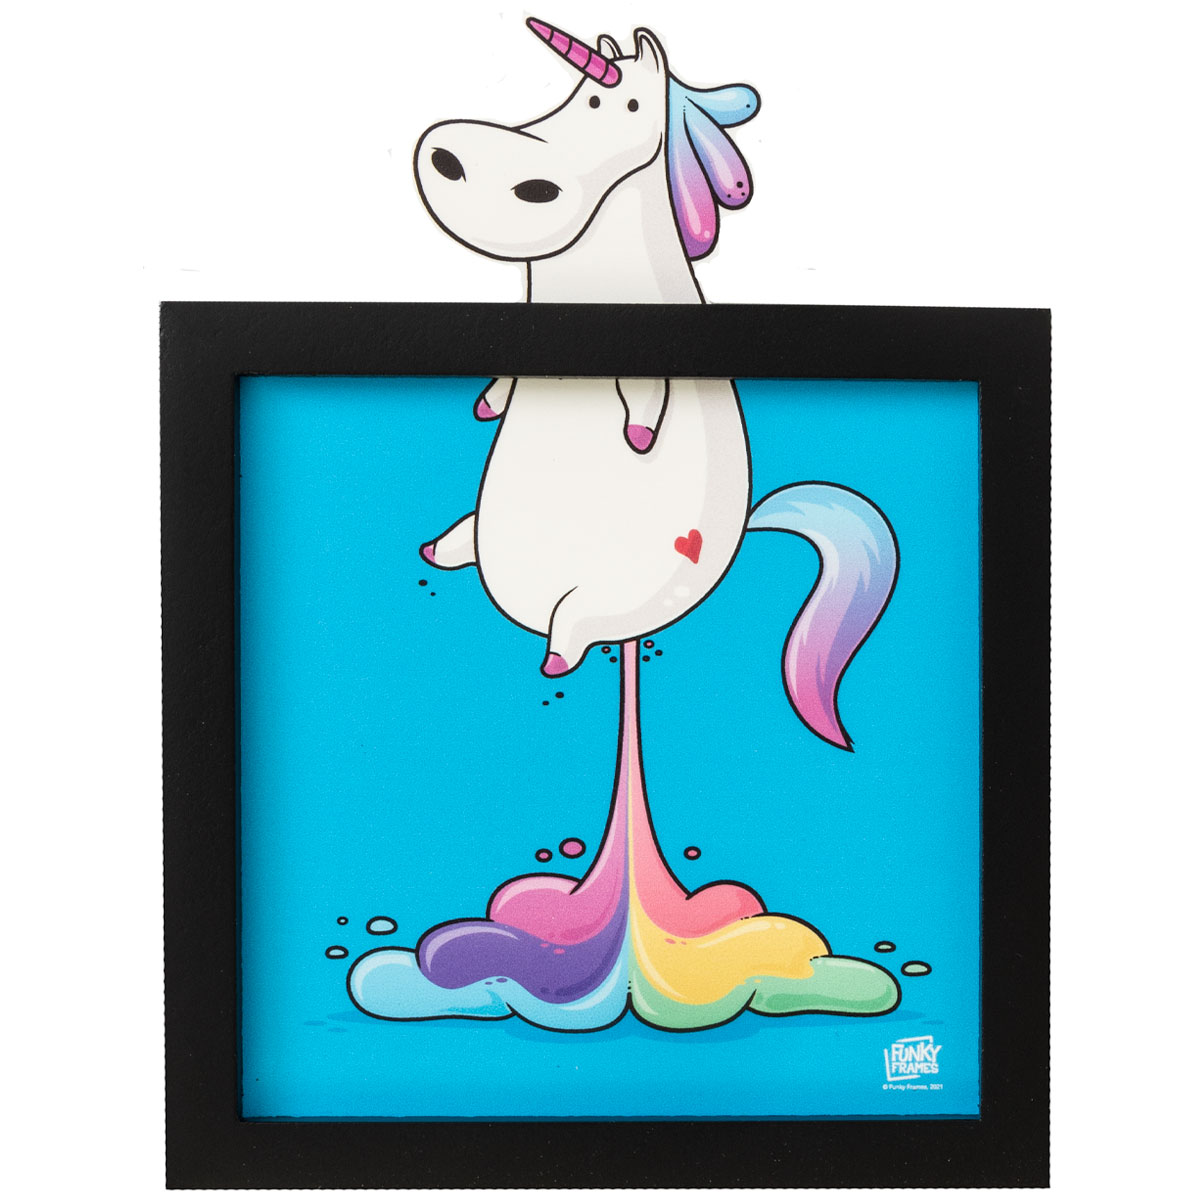 Funky Frames : The rainbow unicorn